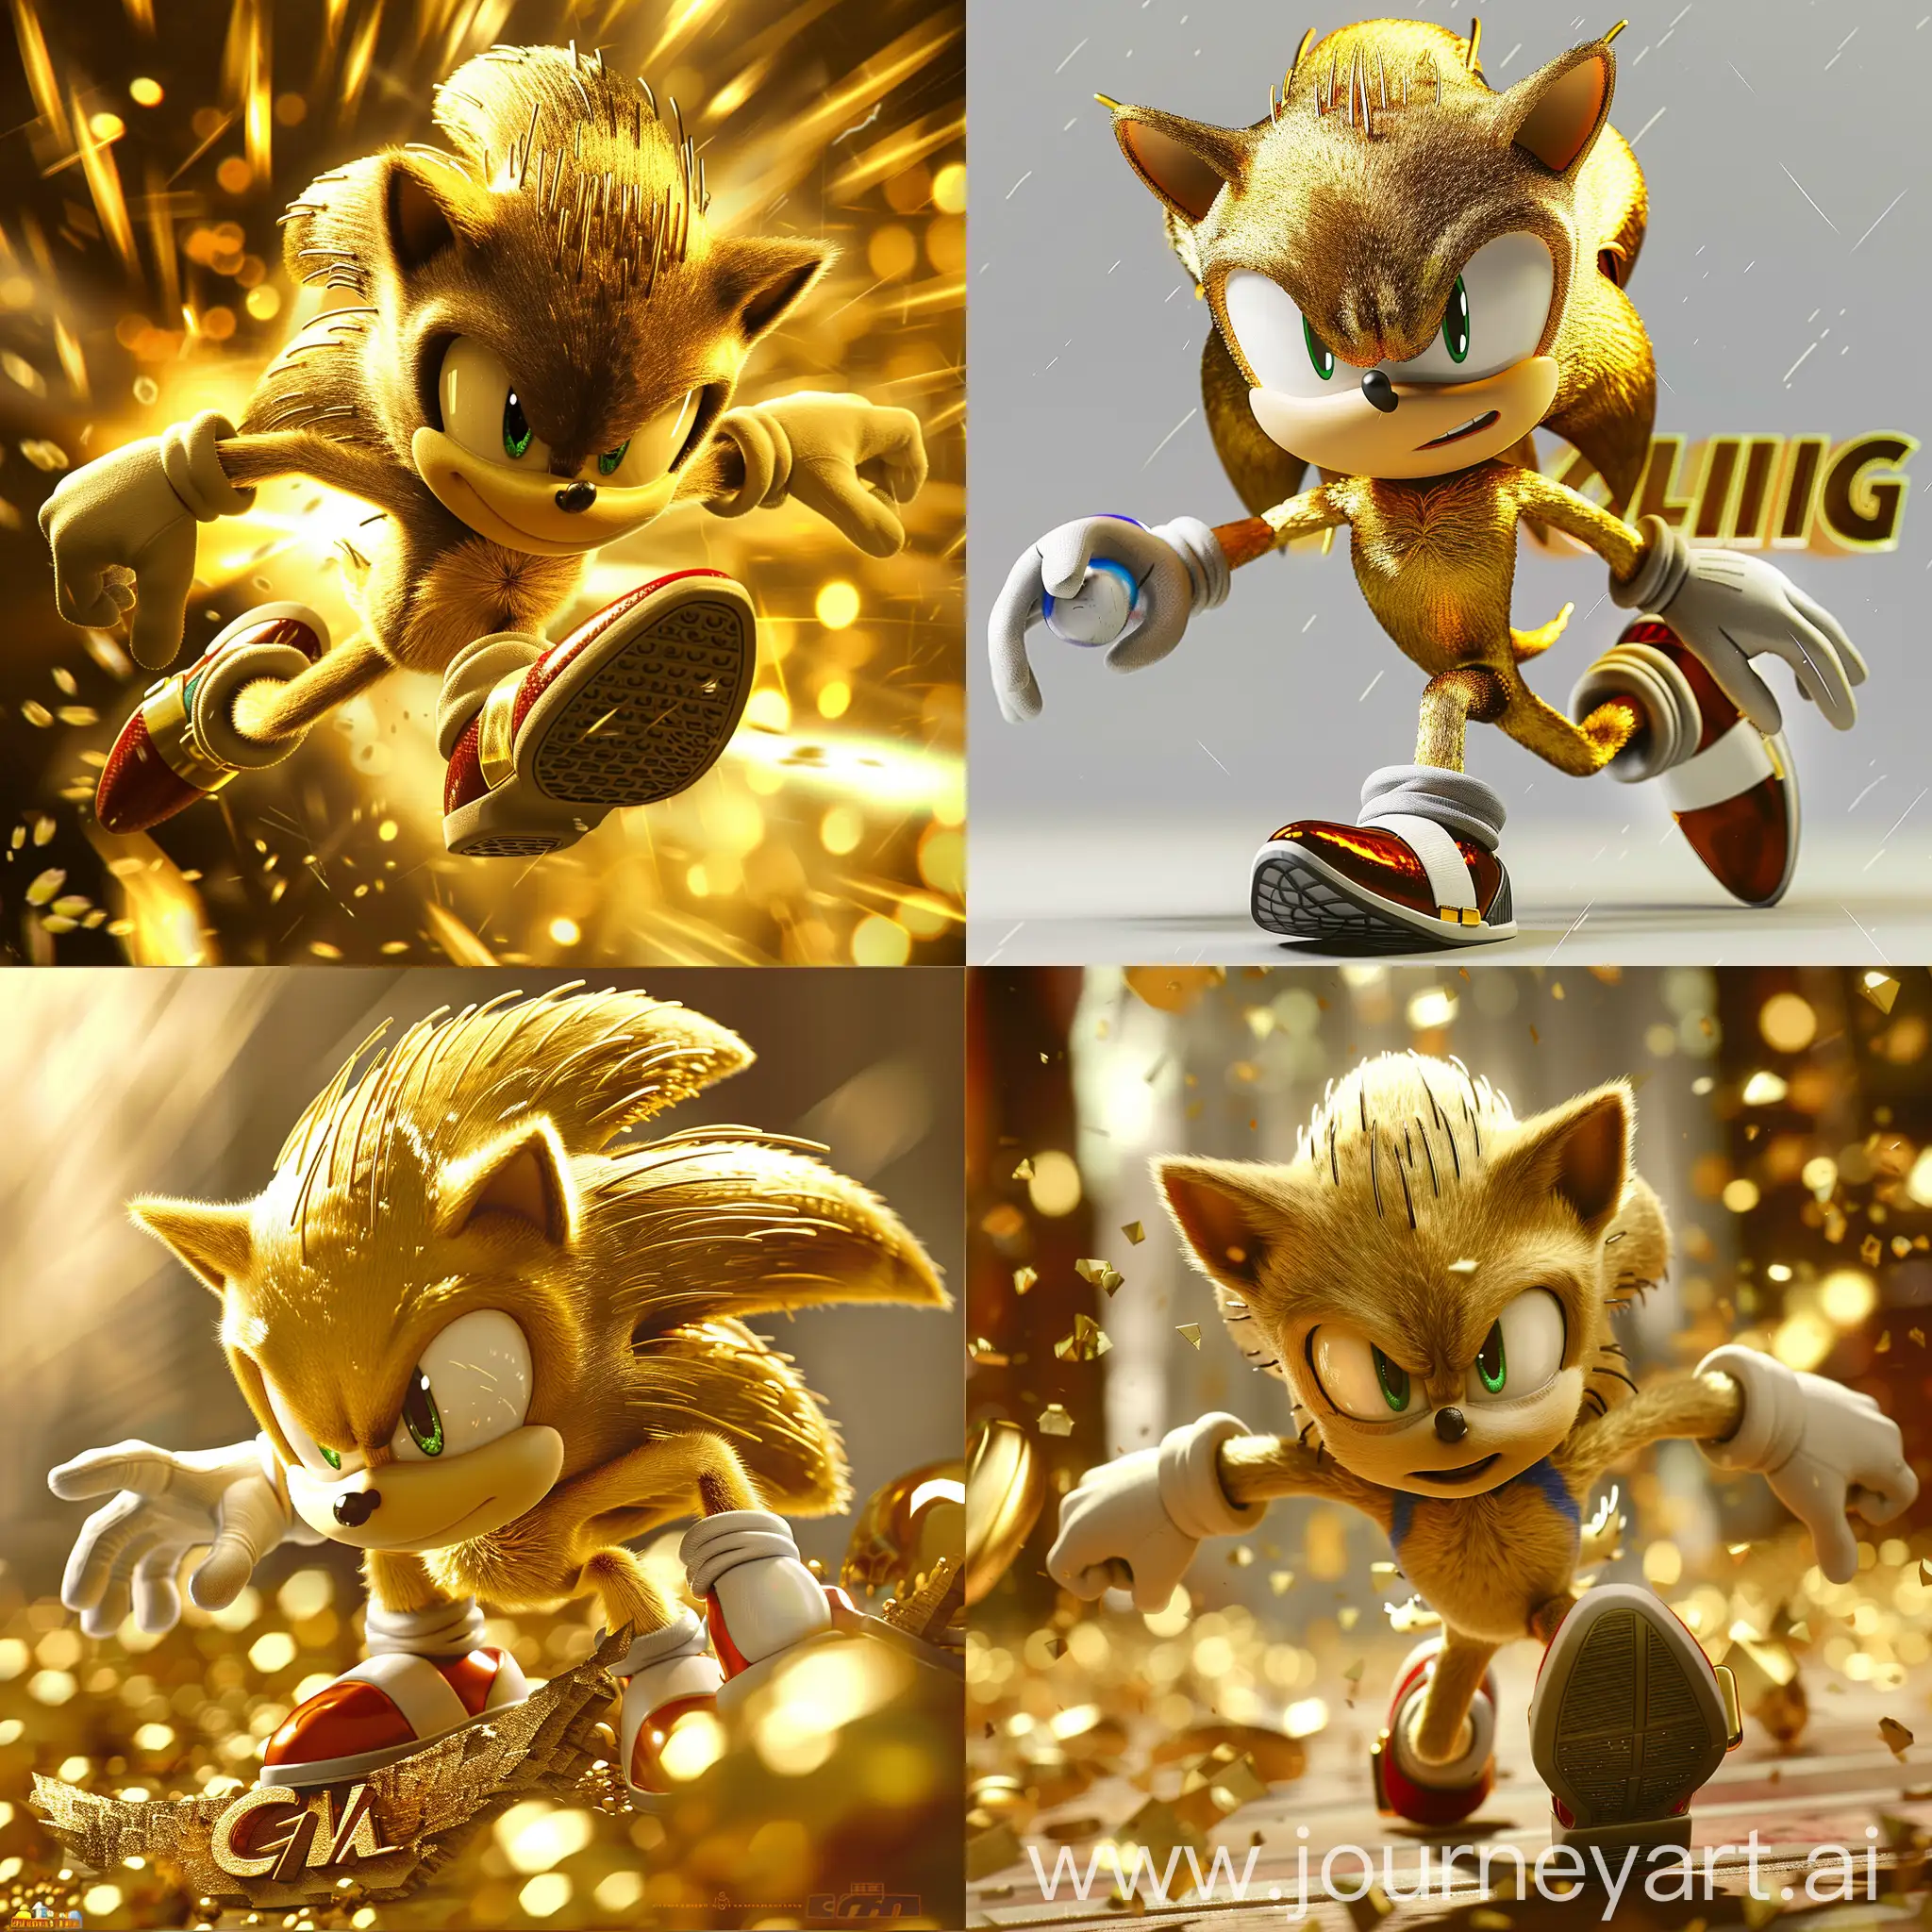 Sonic-the-Hedgehog-in-Golden-Super-Zone